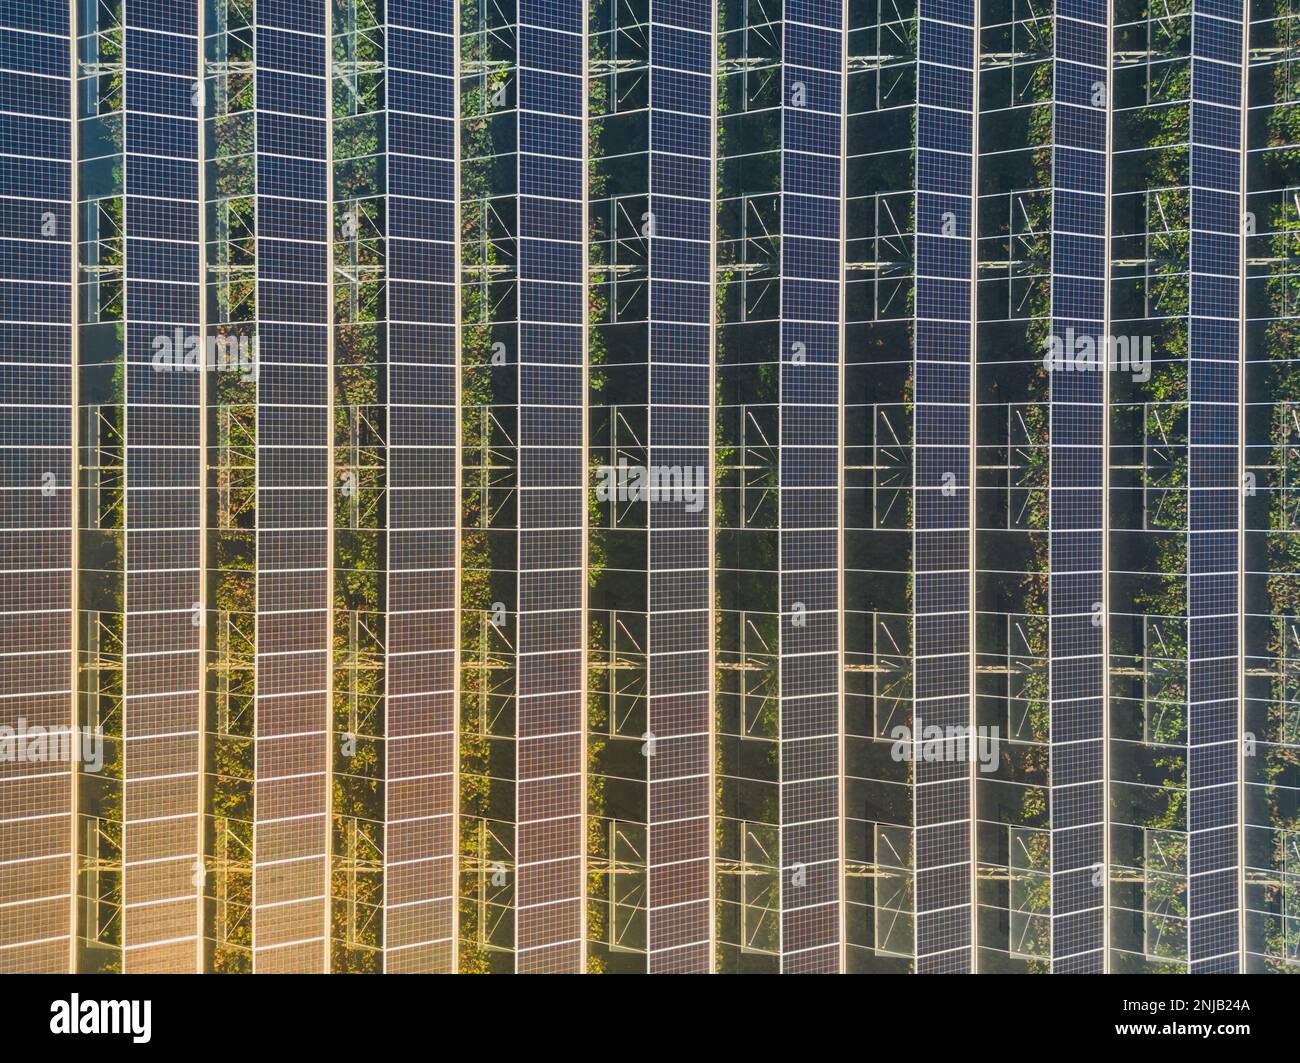 Serre pour la culture de légumes avec panneaux photovoltaïques montés Banque D'Images